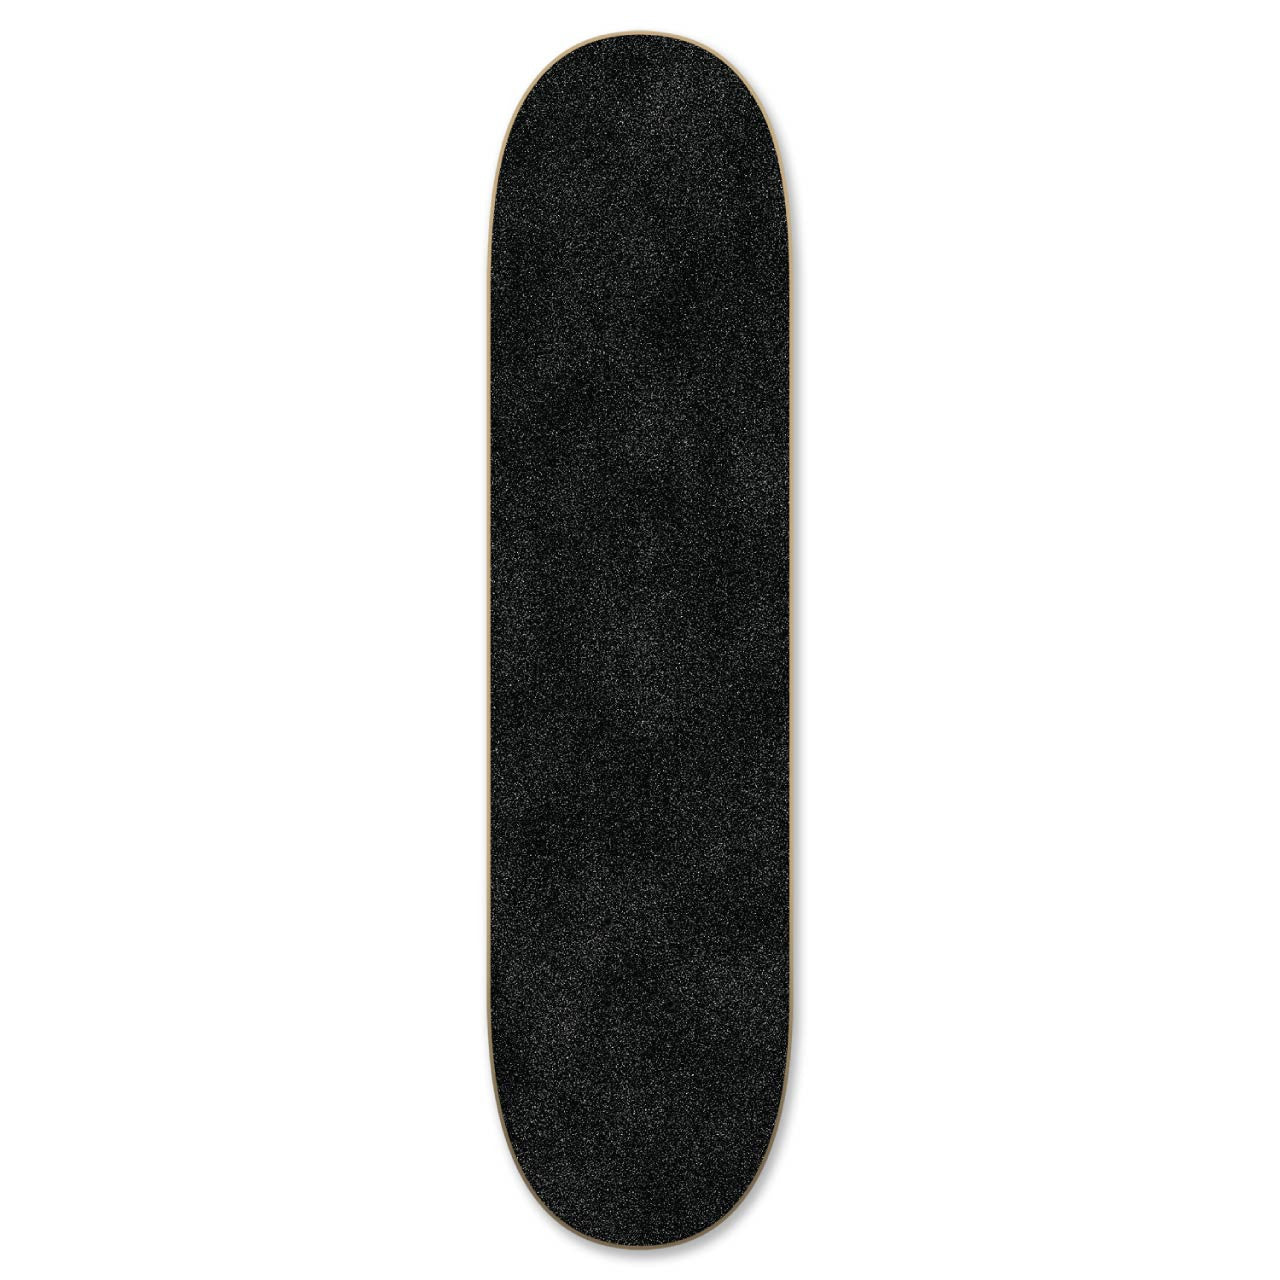 Yocaher Blank Skateboard Deck - Woodie Natural